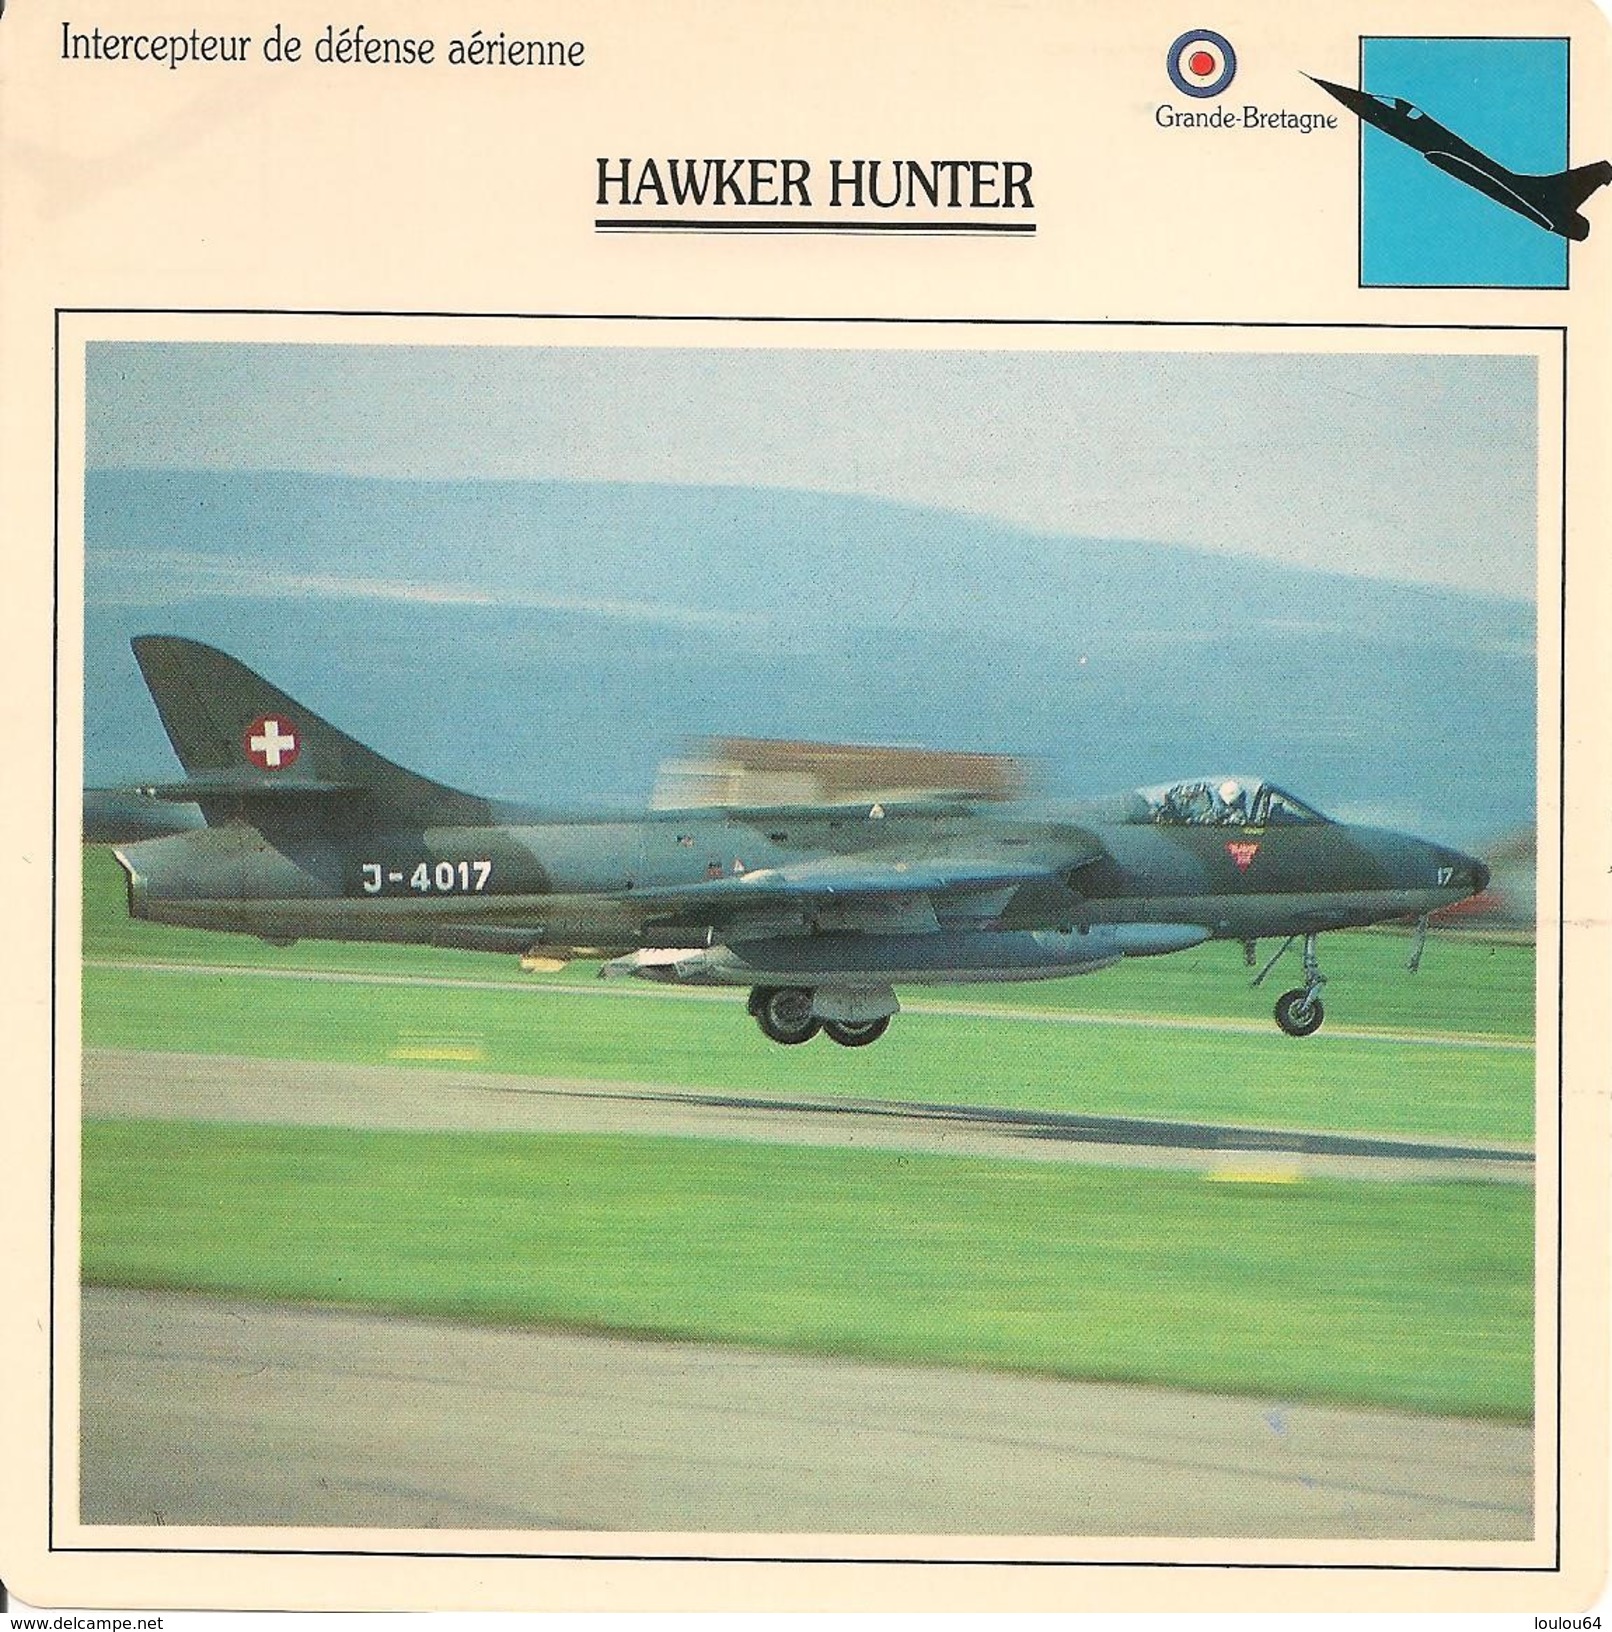 Fiches Illustrées - Caractéristiques Avions - Intercepteur De Défense Aérienne - HAWKER HUNTER - Grande Bretagne - (38) - Aviation